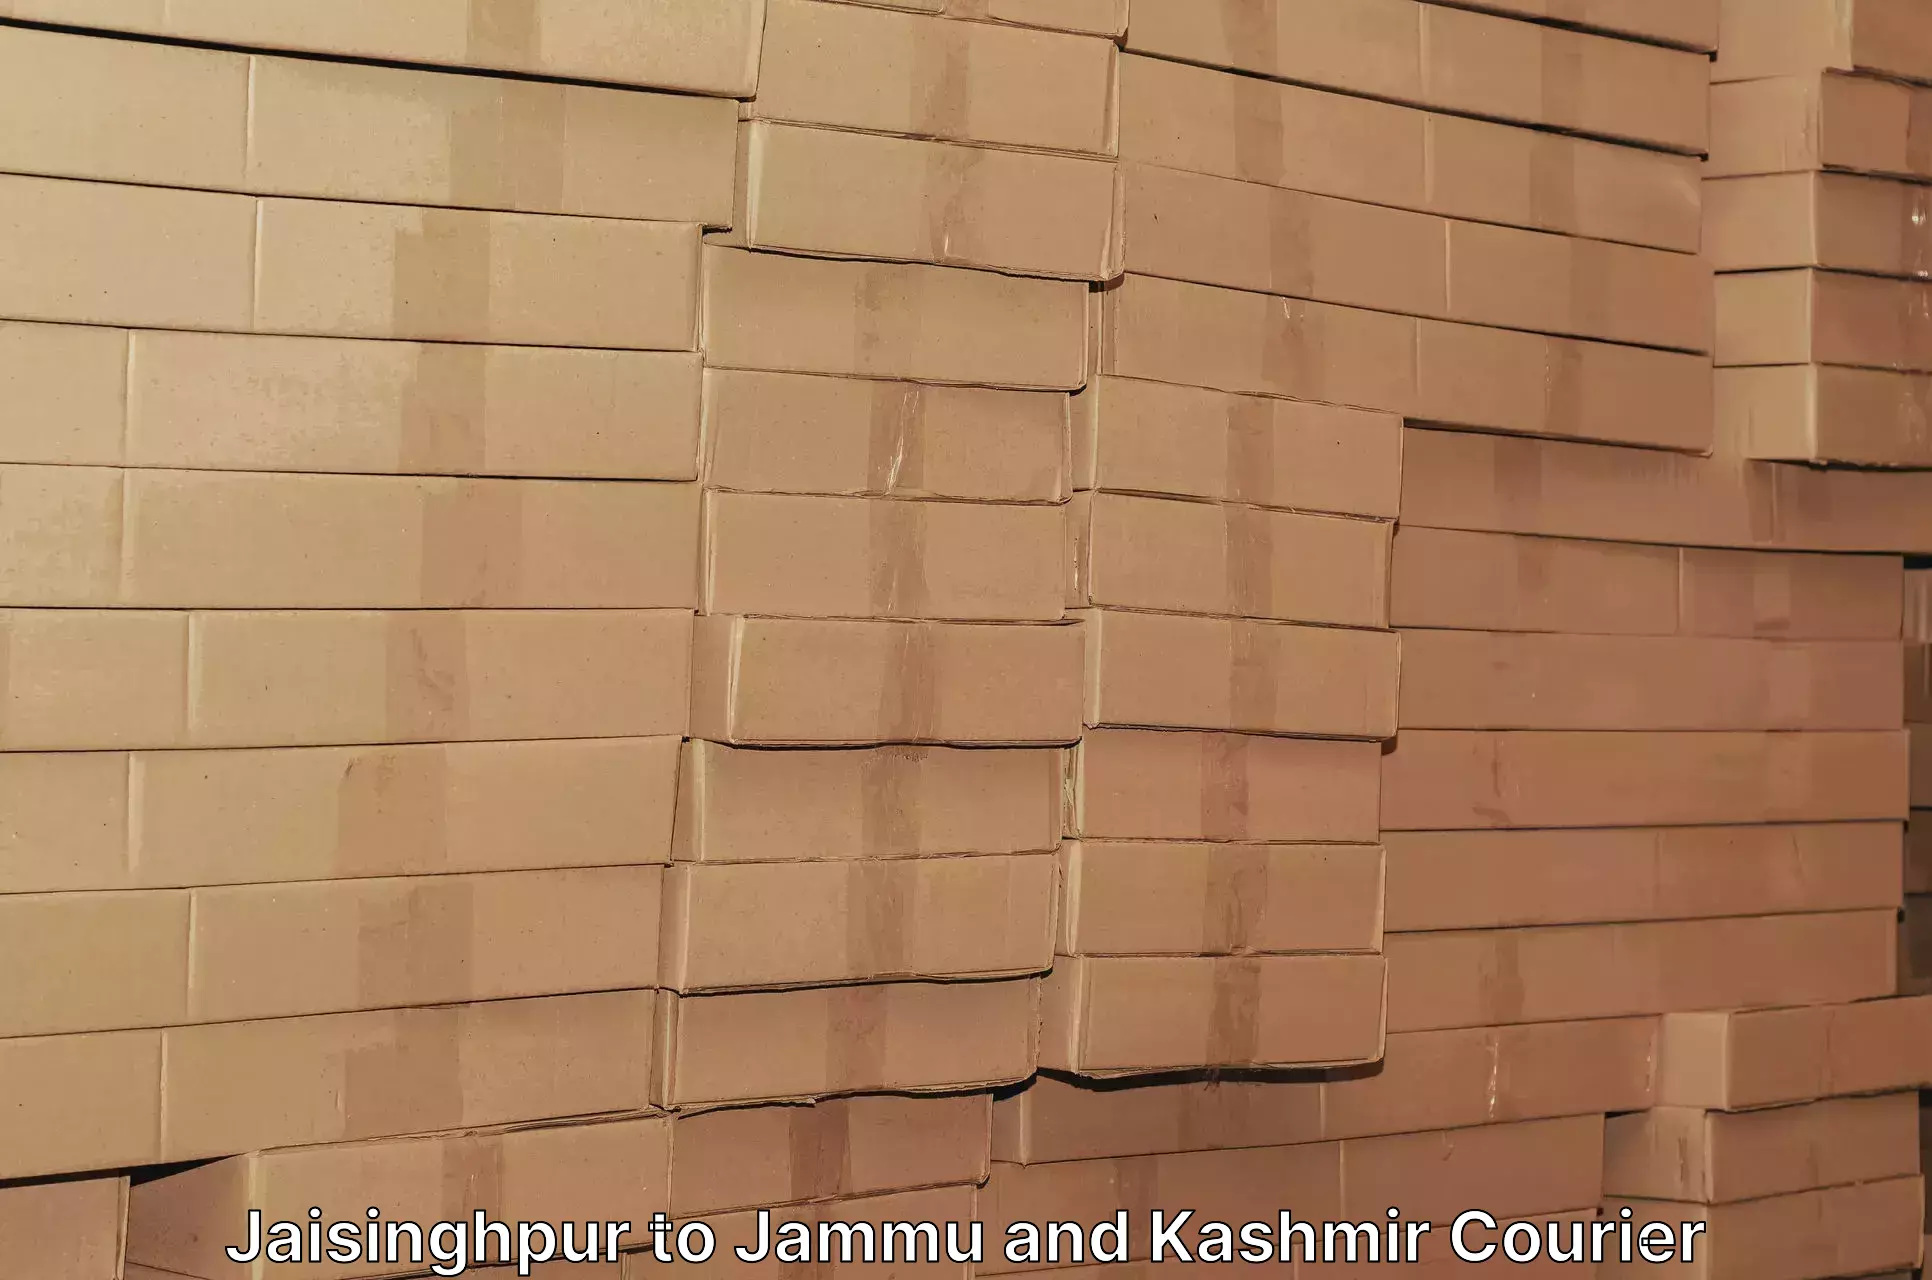 Rapid freight solutions Jaisinghpur to Kishtwar